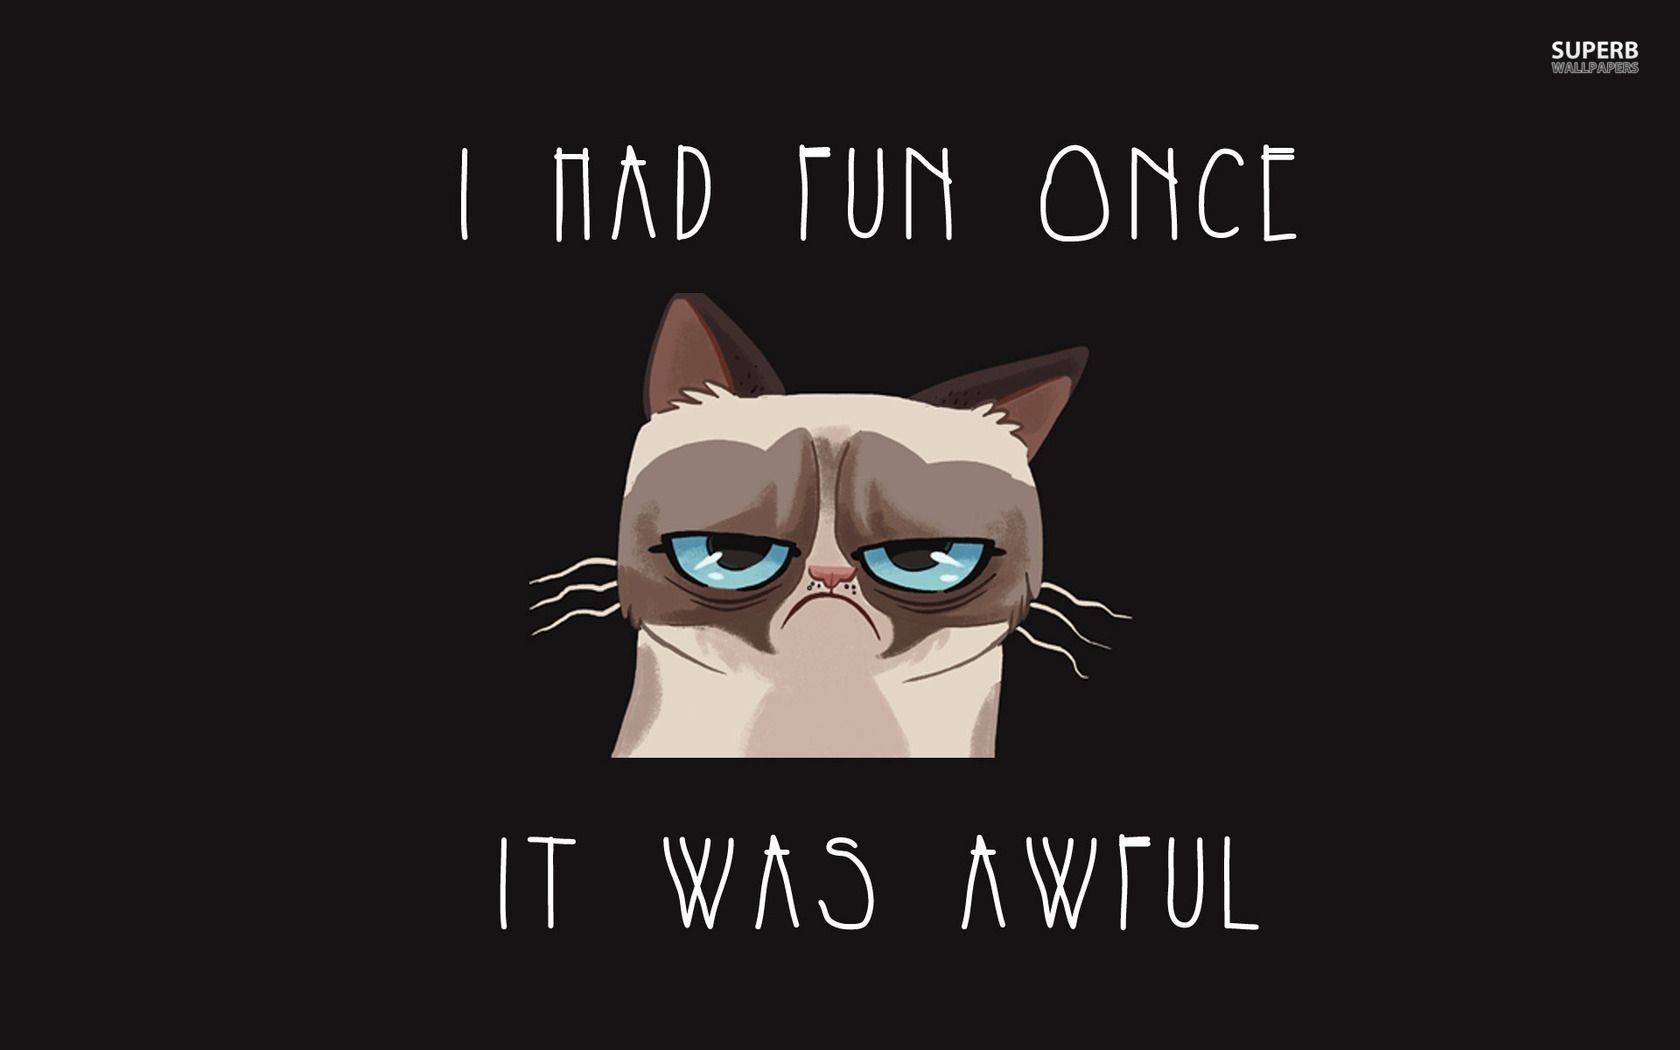 Grumpy Cat wallpaper. Grumpy cat cartoon, Grumpy cat quotes, Grumpy cat humor